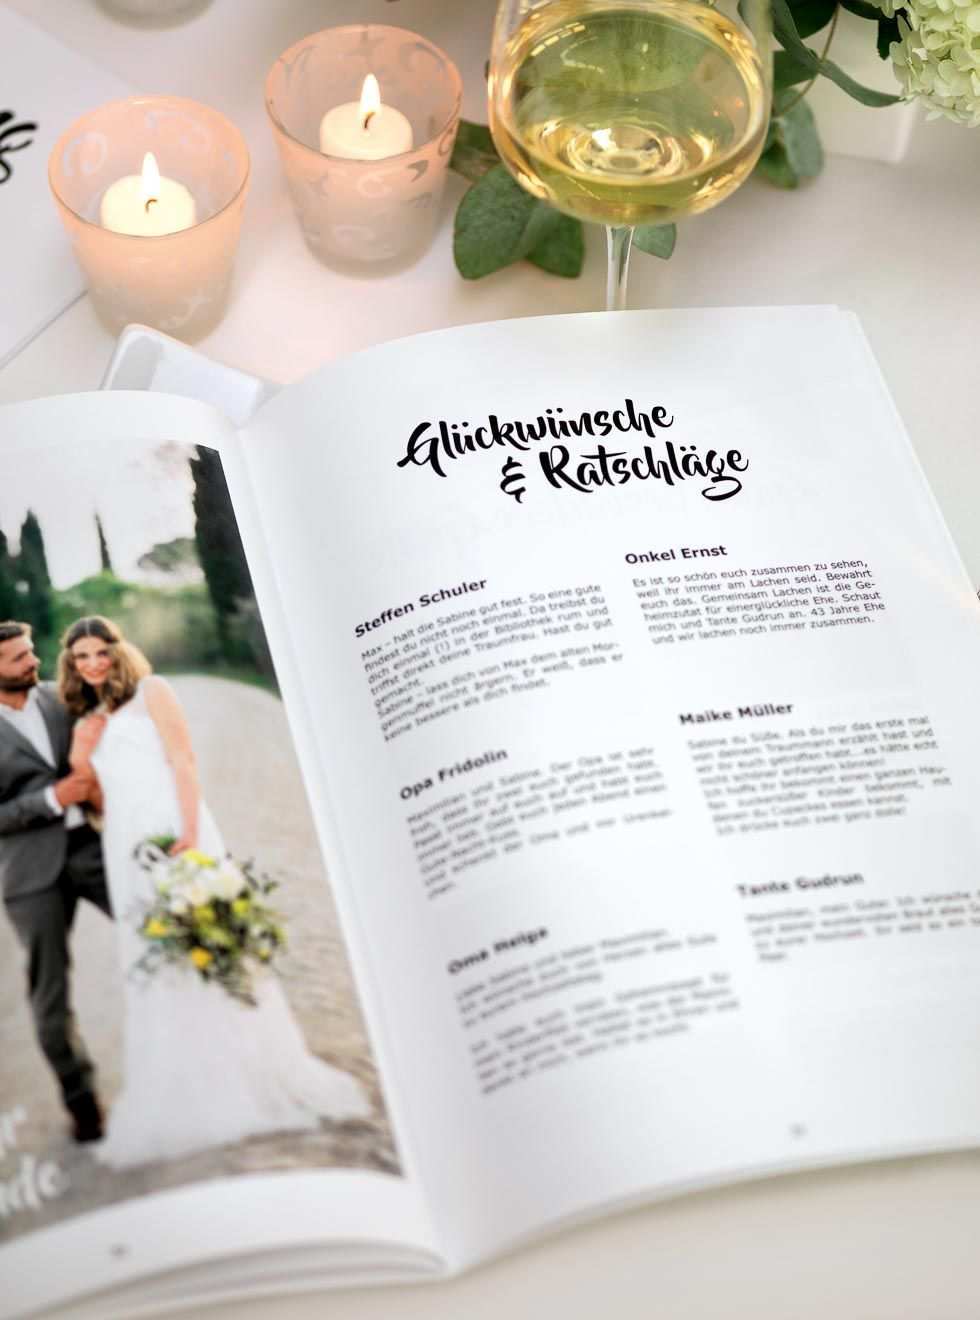 Hochzeitszeitung Vorlage Professionelles Magazin In Word Gestalten Hochzeitszeitung Hochzeit Hochzeit Broschure